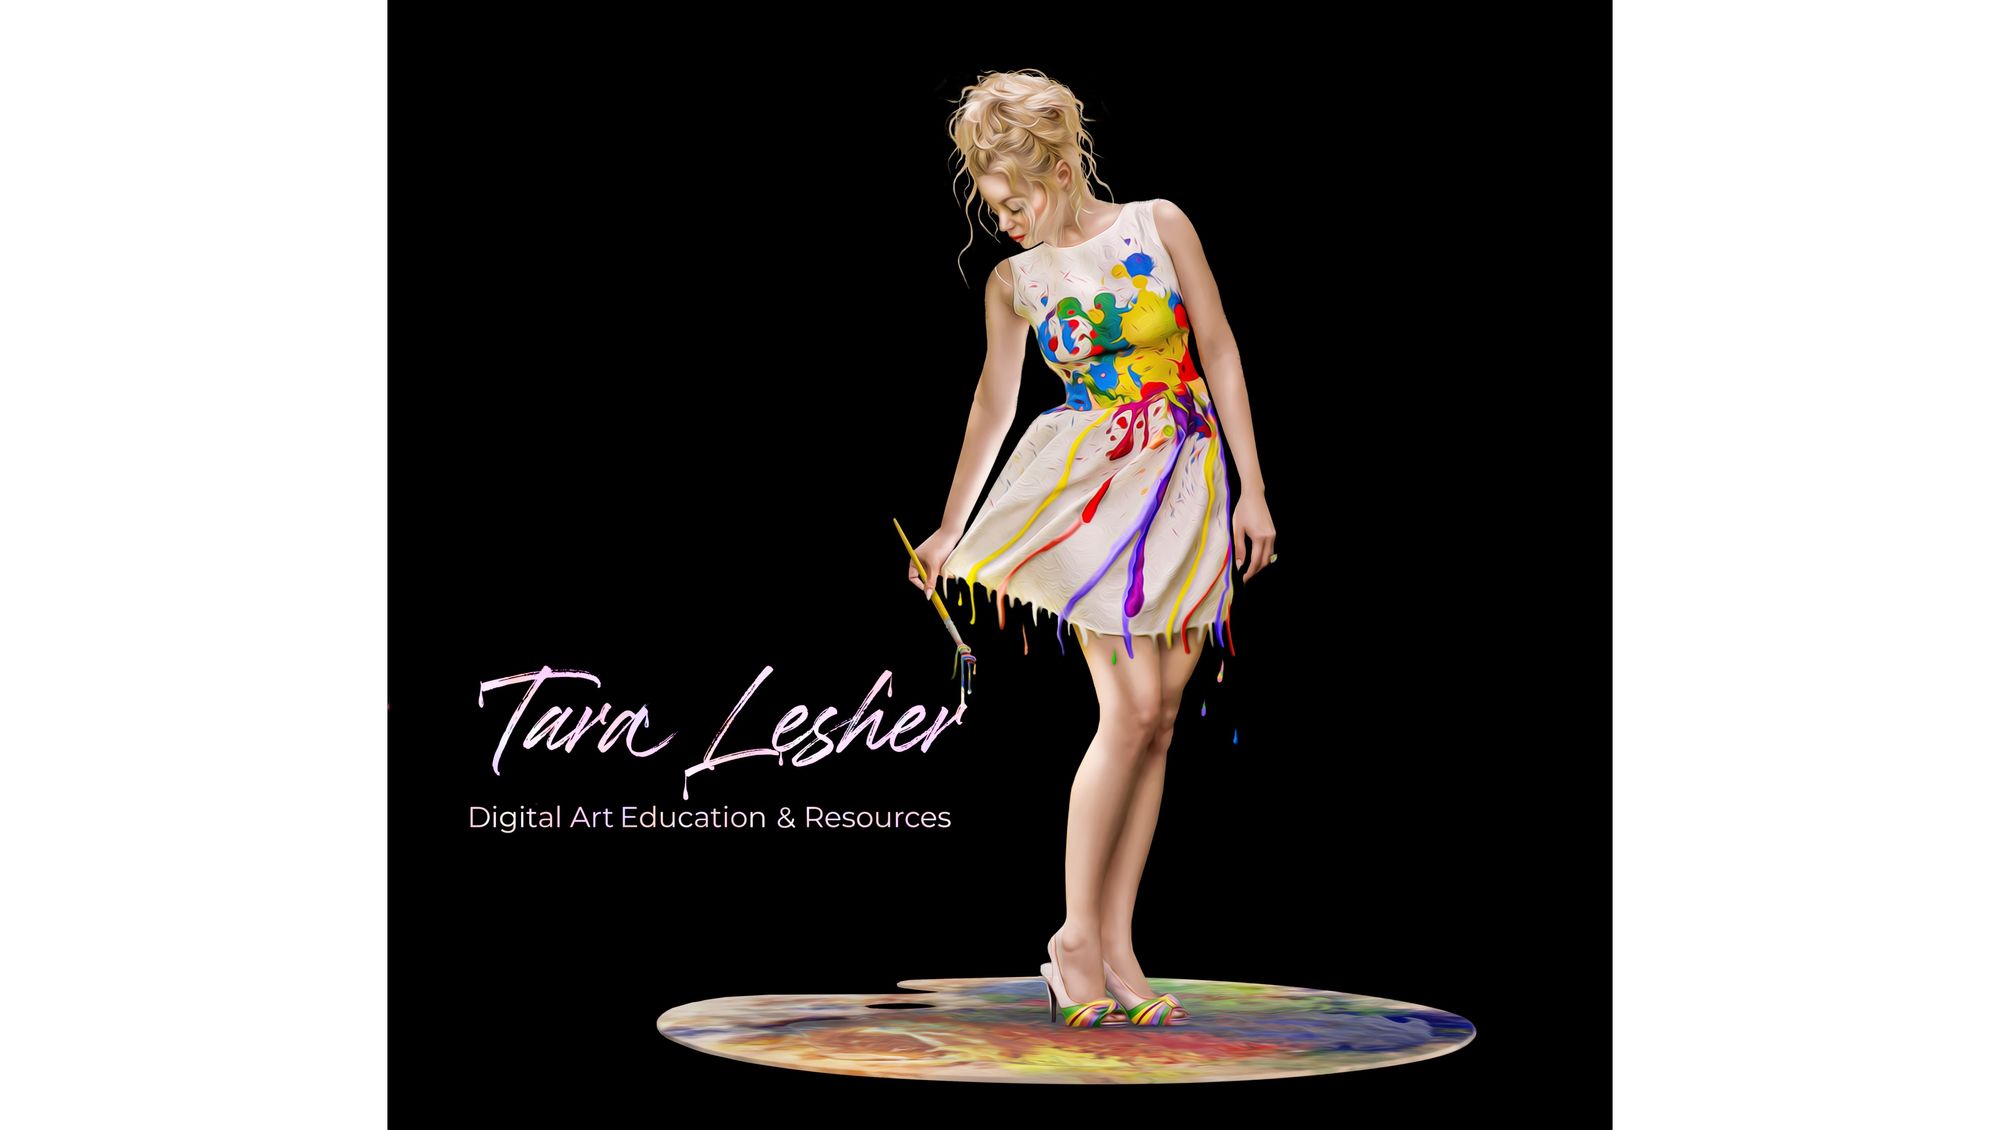 Photoshop Education & Image Editing Resources - Tara Lesher